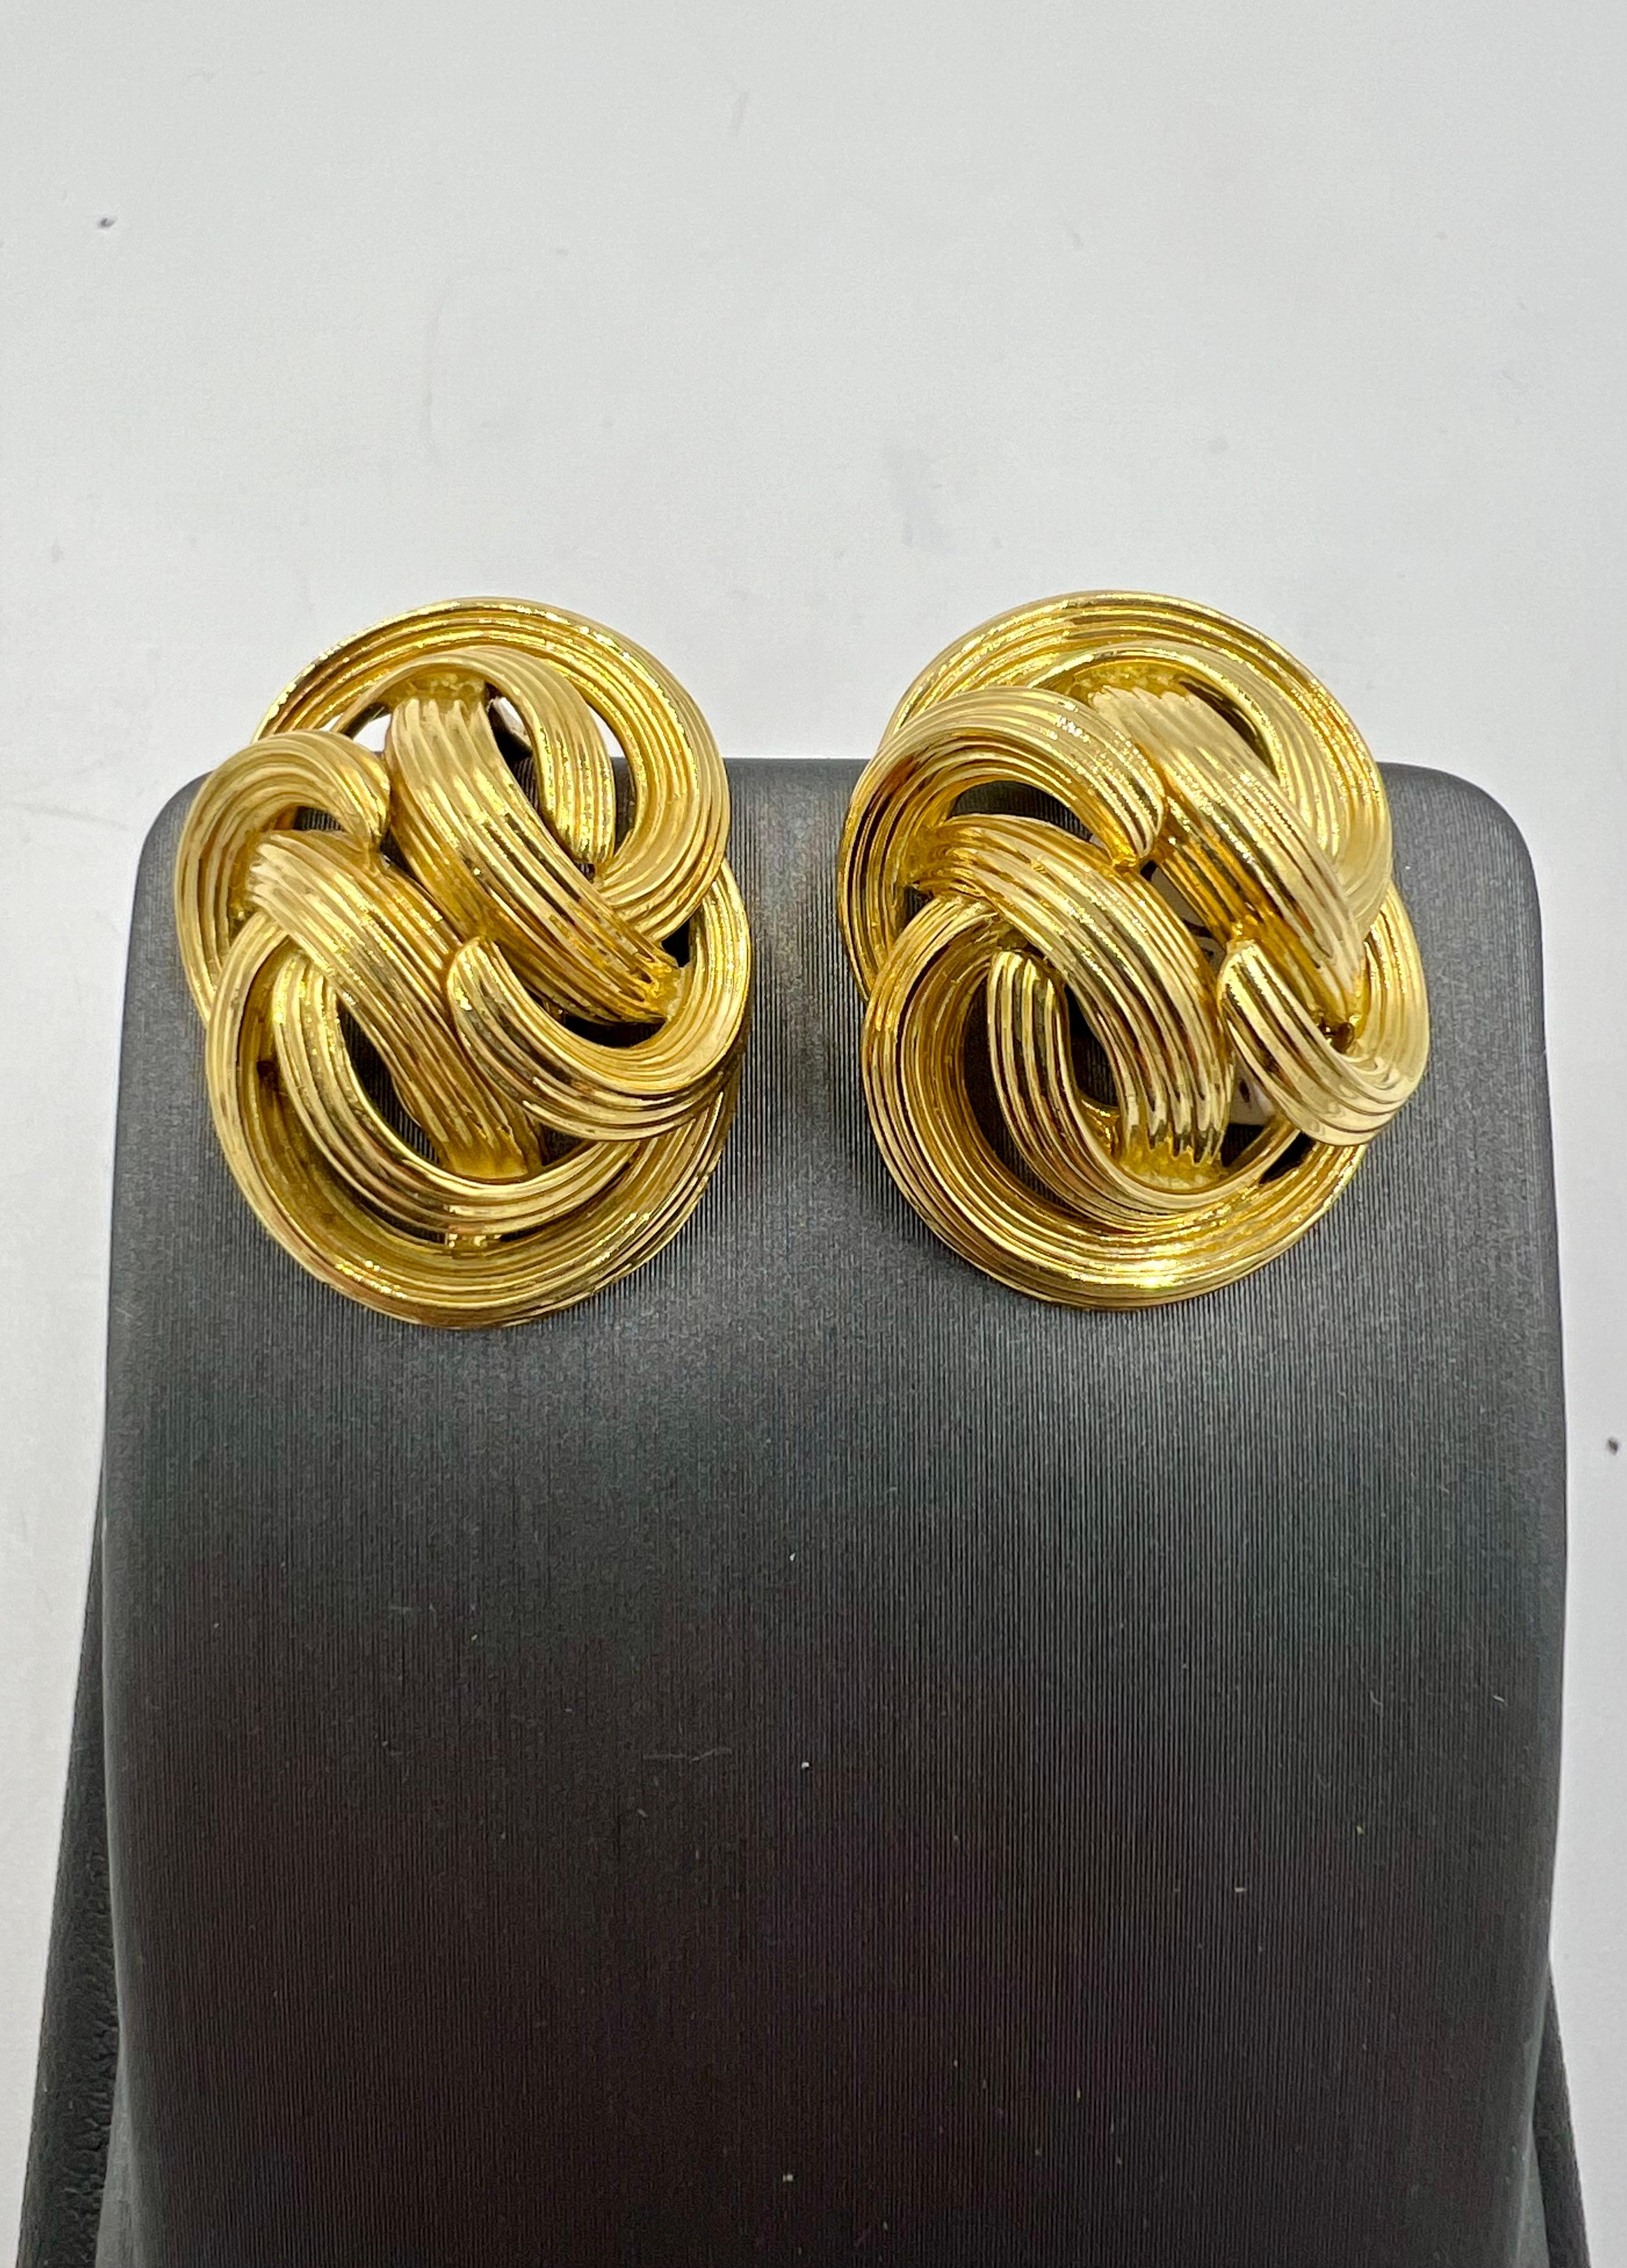 Tiffany geriffelte Gelbgold-Clip-Ohrringe, circa 1980er Jahre

Die geriffelten Tiffany-Ohrringe aus Gelbgold sind ein zeitloses und elegantes Accessoire, das Raffinesse und Stil ausstrahlt. Die aus luxuriösem Gelbgold gefertigten Ohrringe haben ein